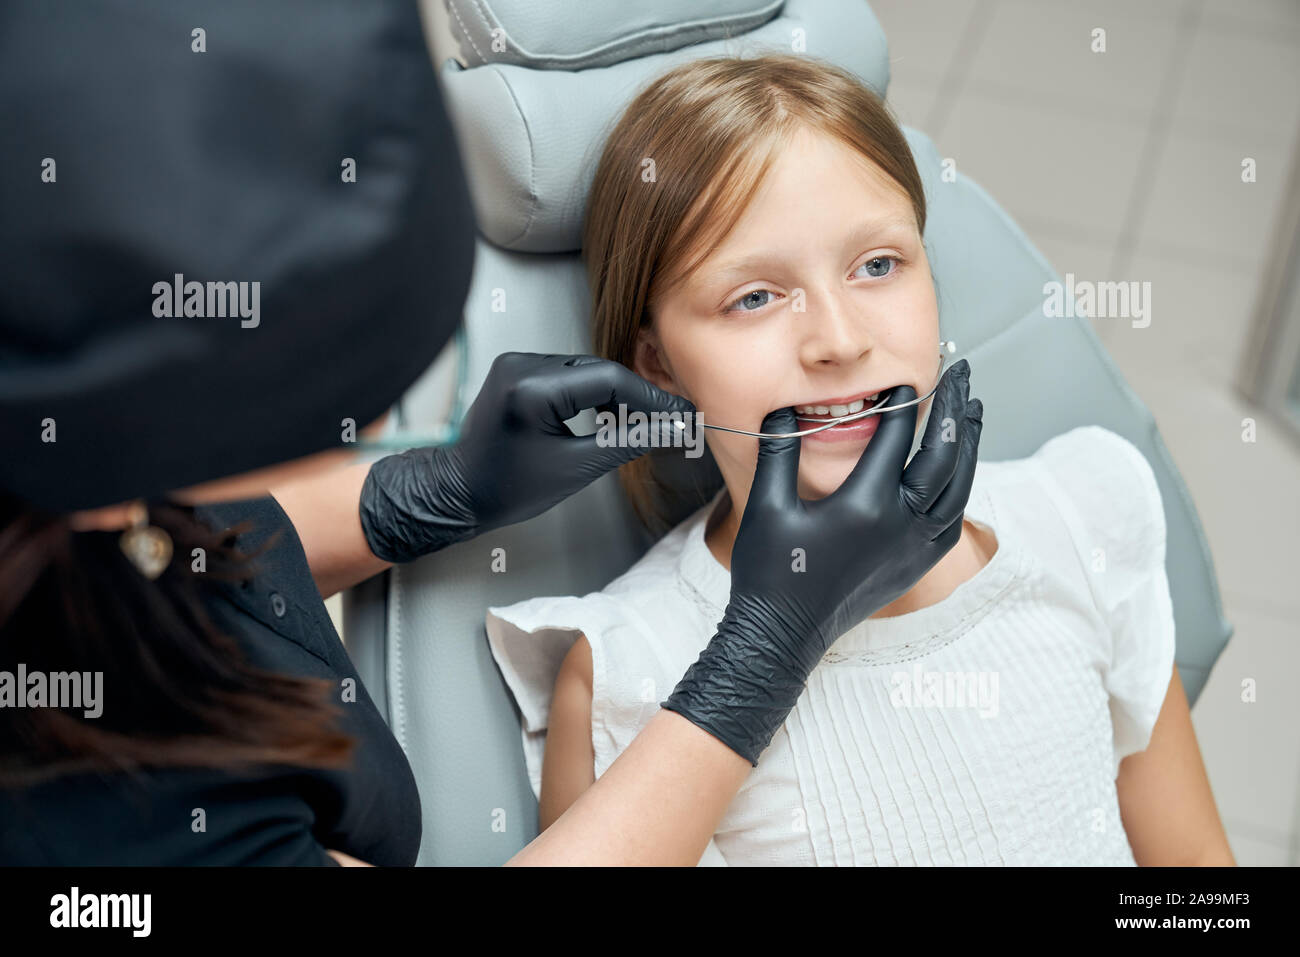 Junge, hübsche Mädchen, Zahnarzt in moderne Zahnarztpraxis. Patient im Behandlungsstuhl. Arzt in schwarzer Uniform und schwarzem Gummi Handschuhe versuchen, Klammern für die Ausrichtung der Zähne. Stockfoto